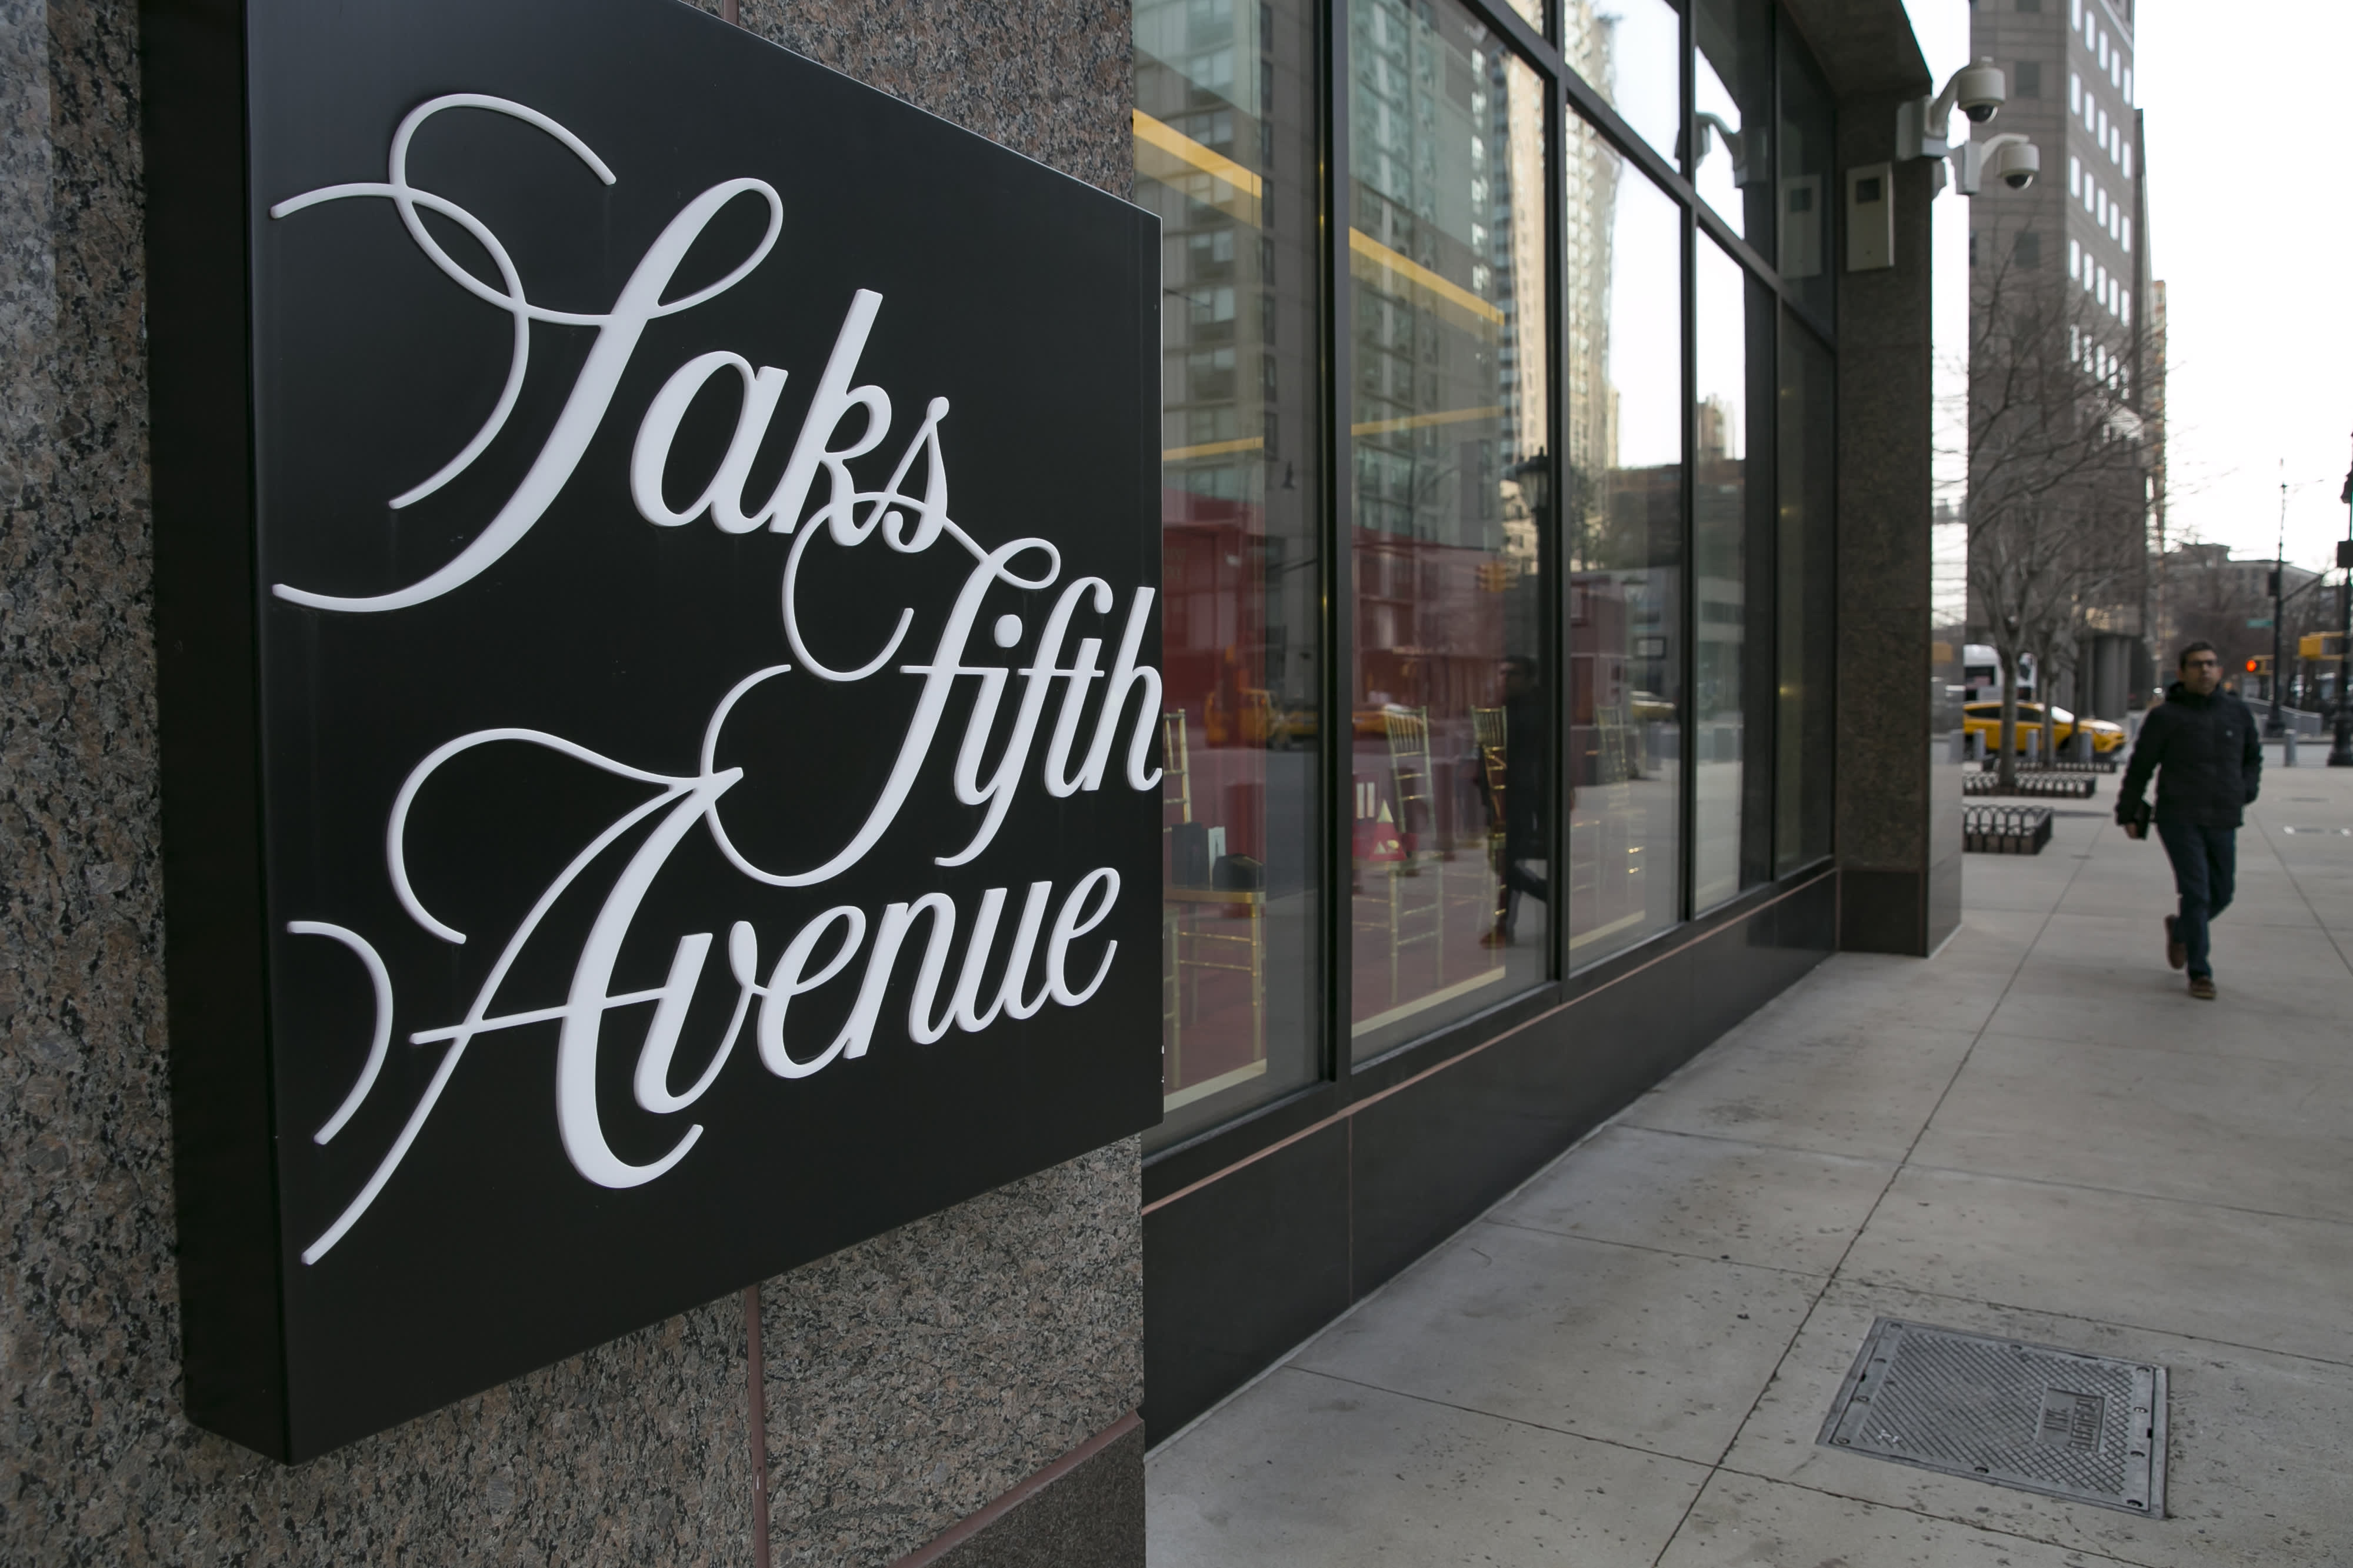 Saks shoe store opens on Greenwich Avenue